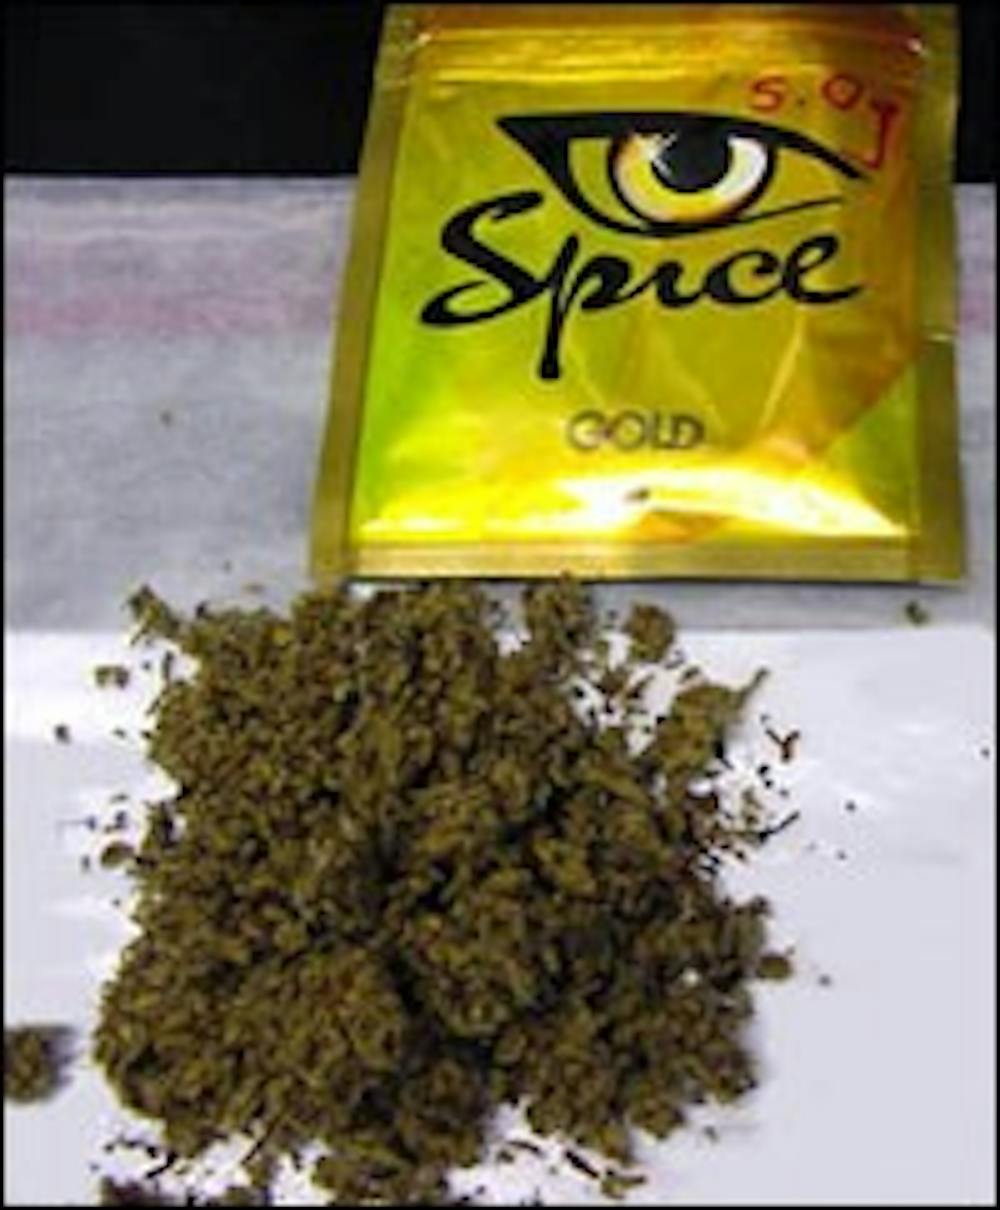 Spice: fake 'pot' raises concern - The Beacon